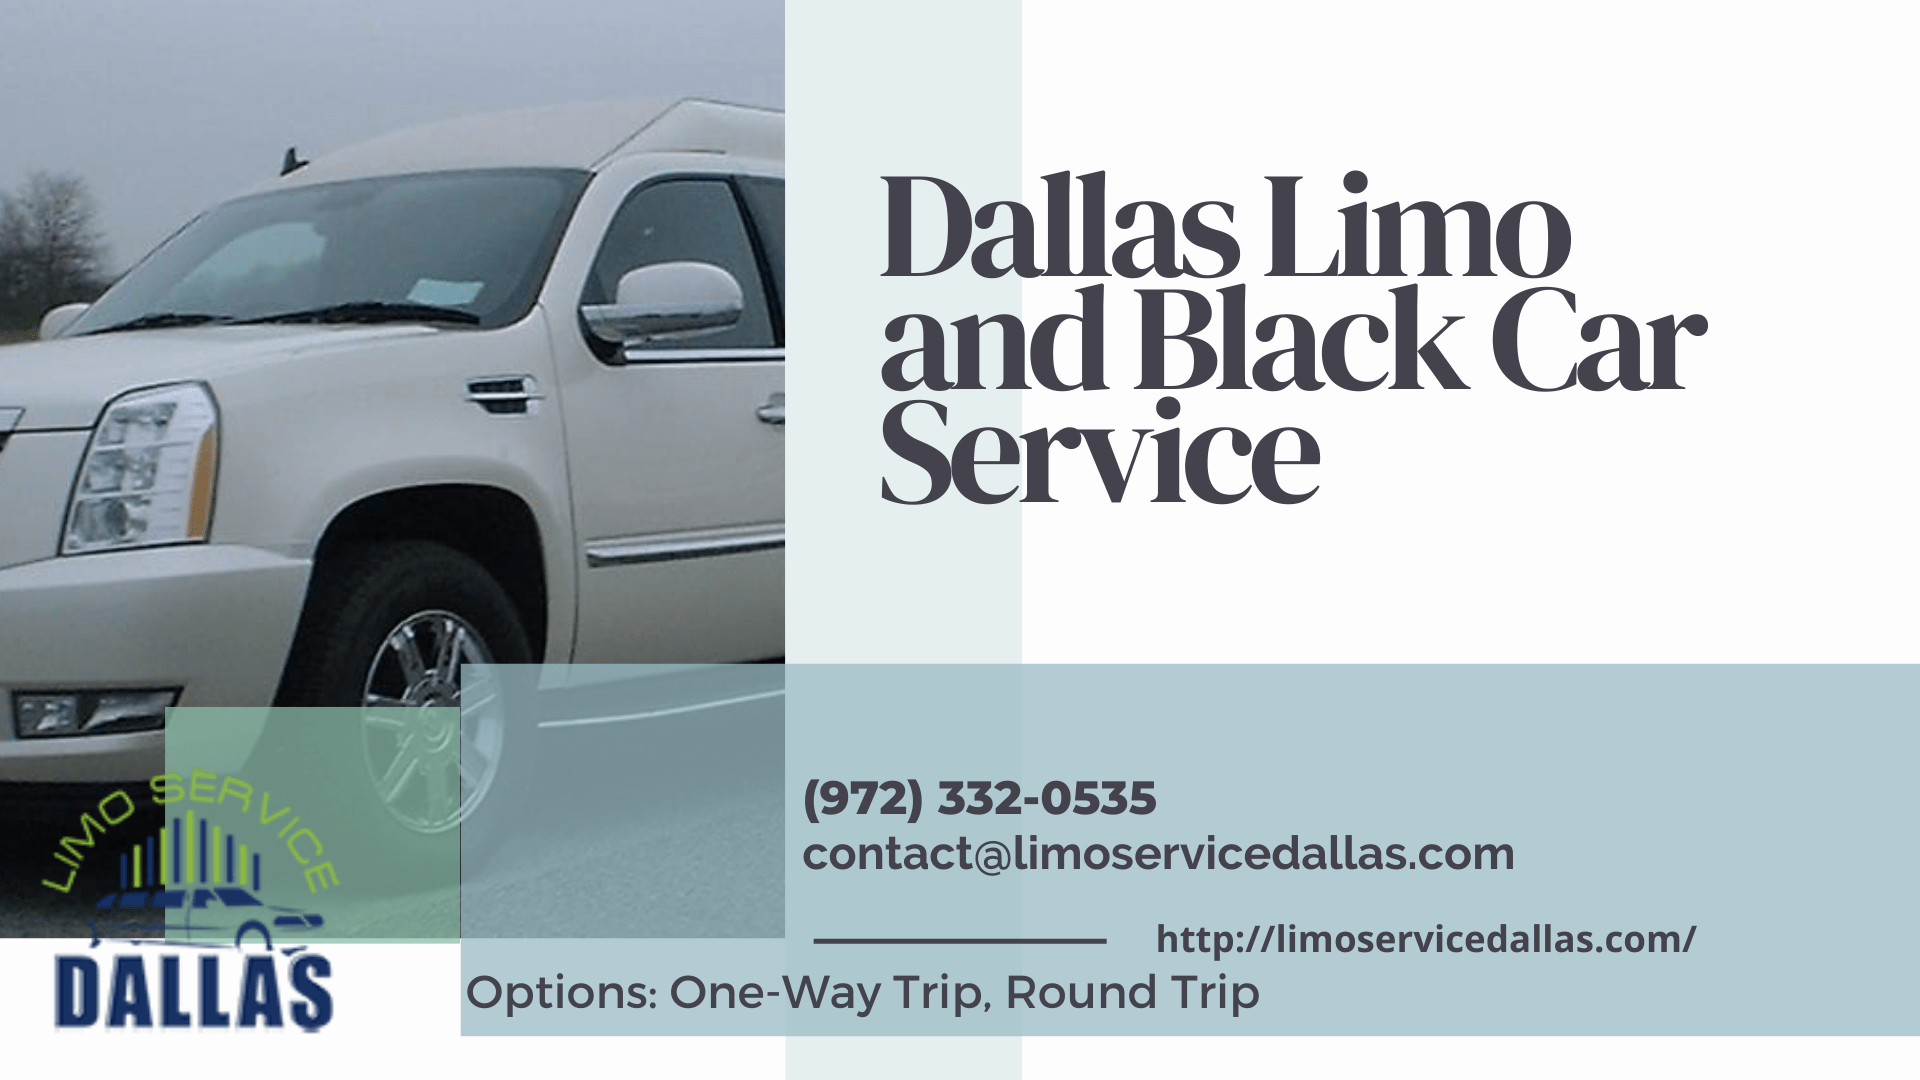 Dallas Limo and Black Car services